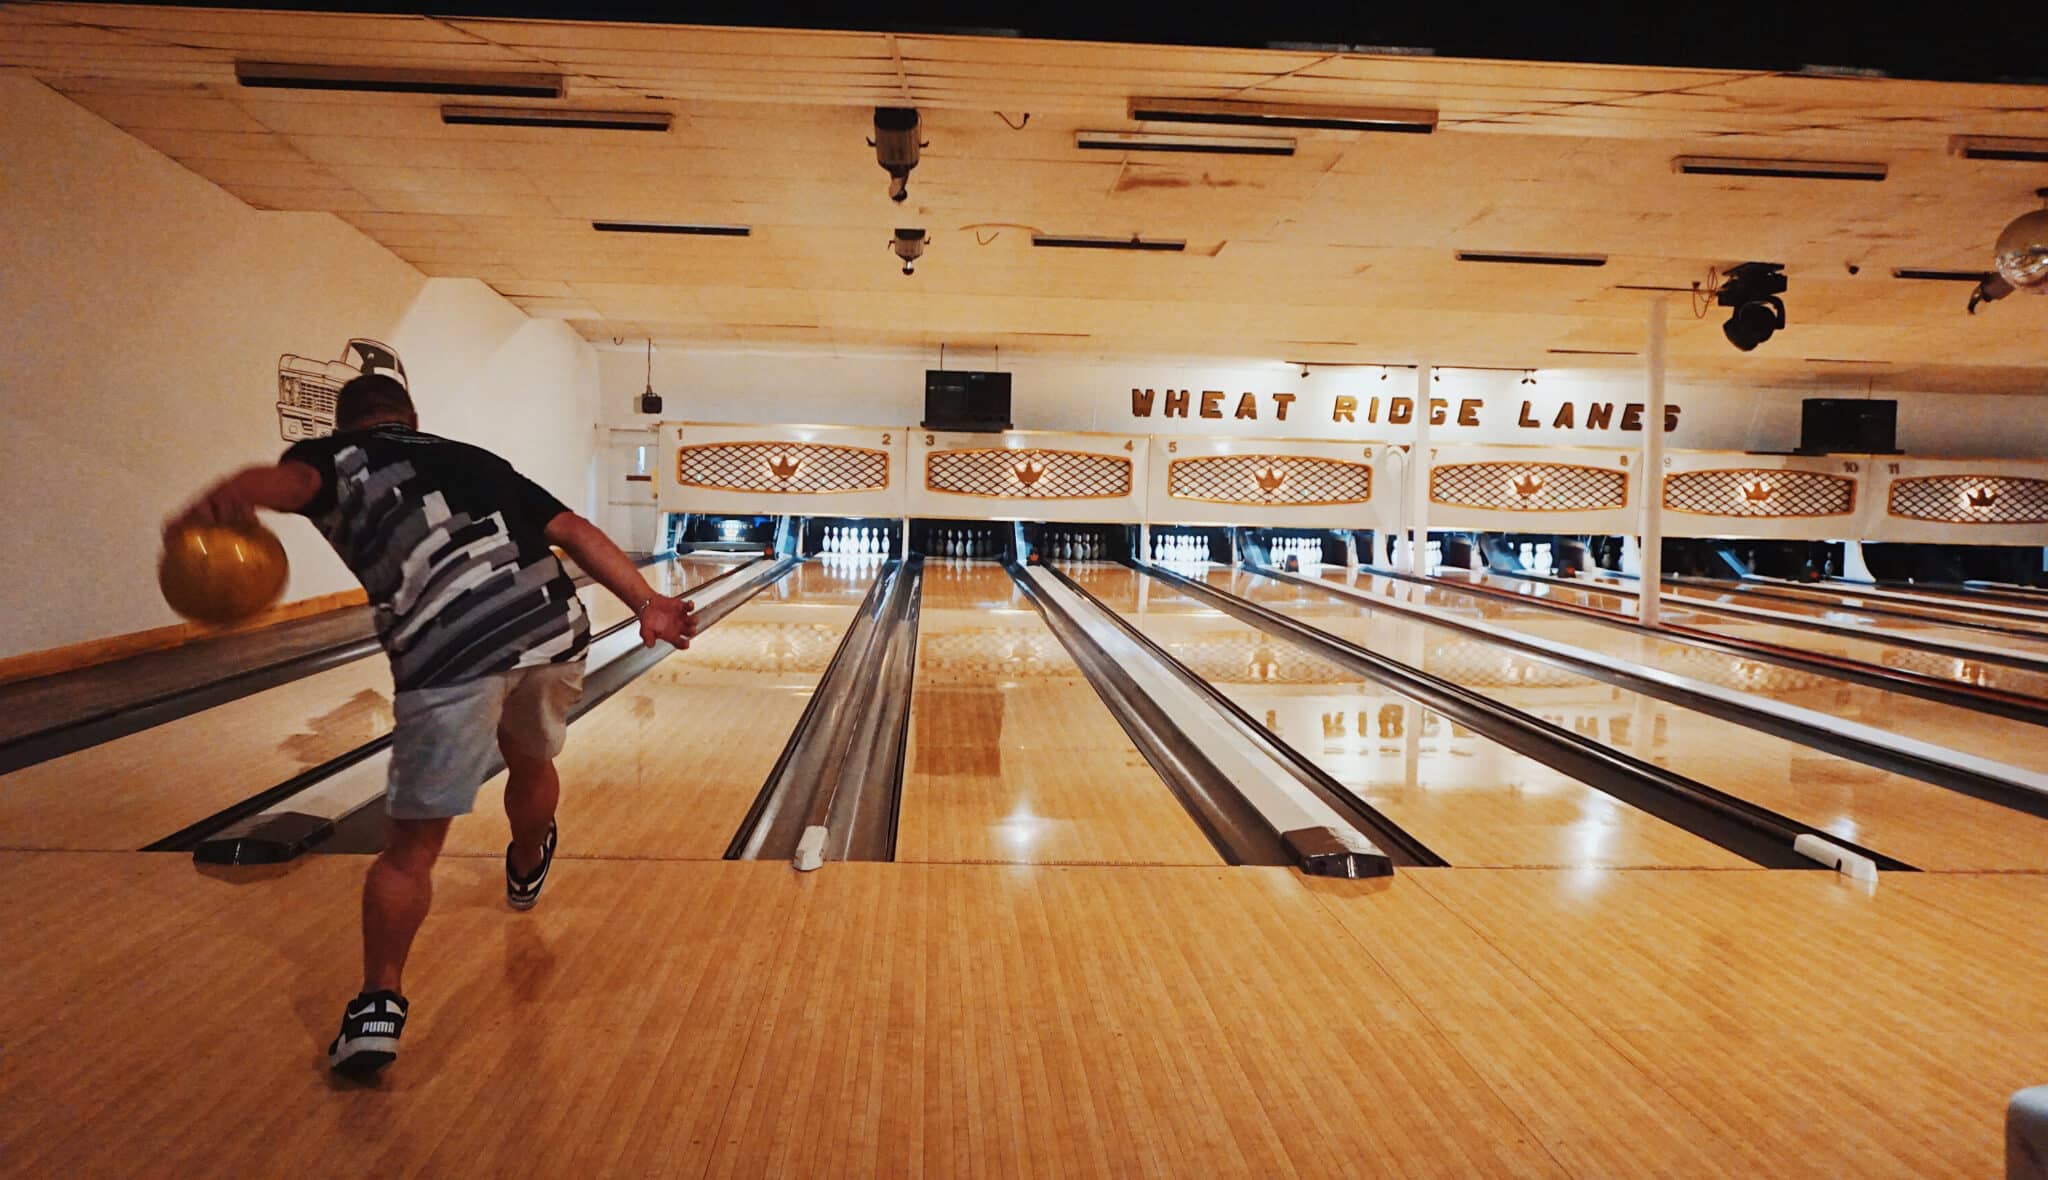 5.21D Wheat Ridge Lanes bowling scaled 1